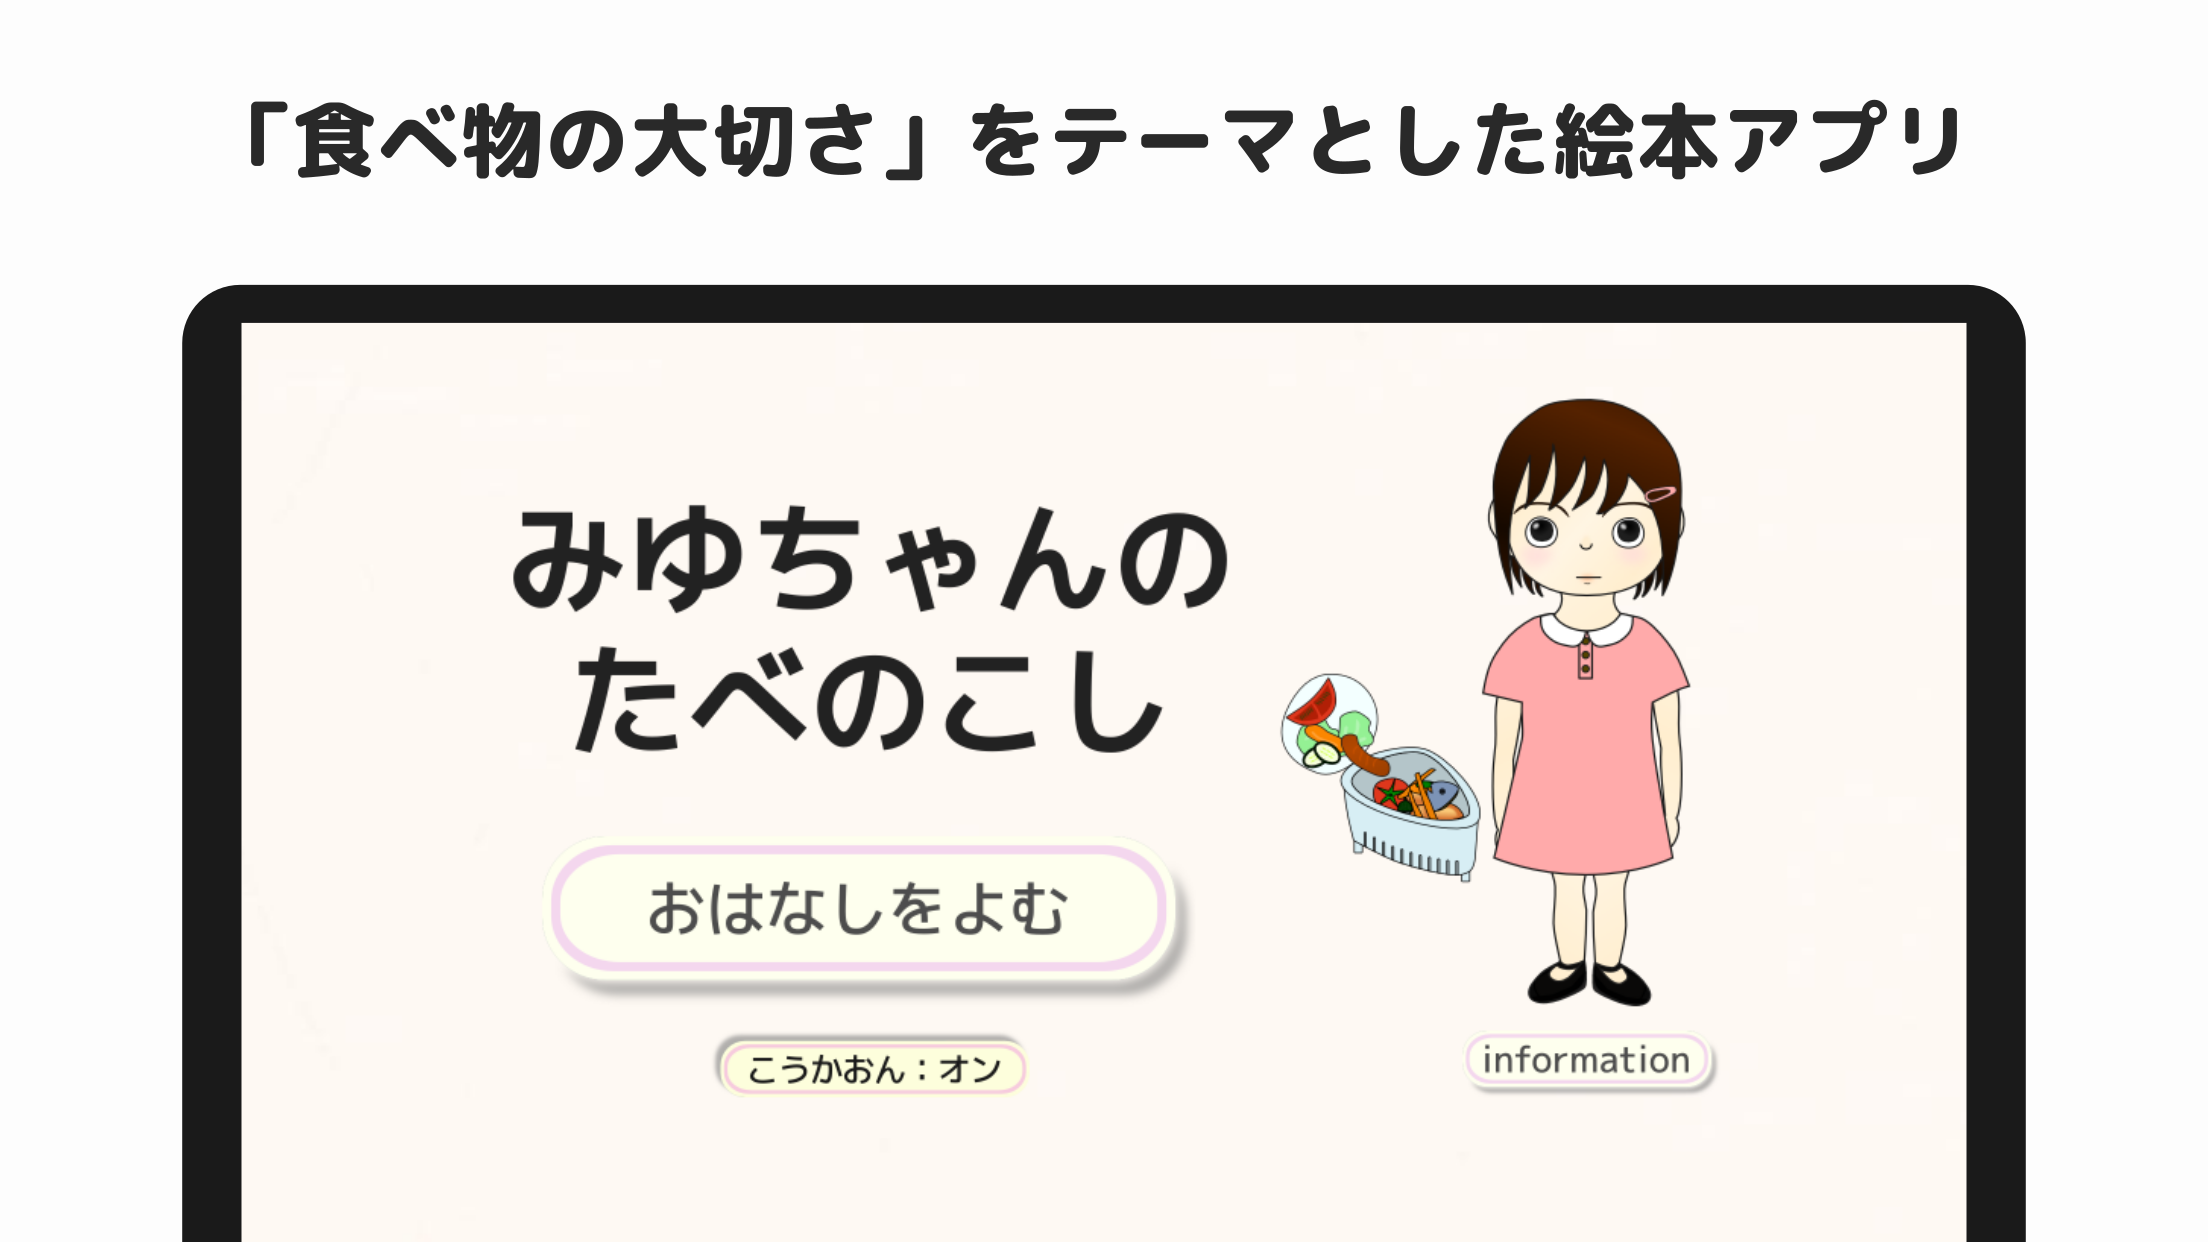 みゆちゃんのたべのこし スクリーンショット1 食べ物の大切さをテーマとした絵本アプリ